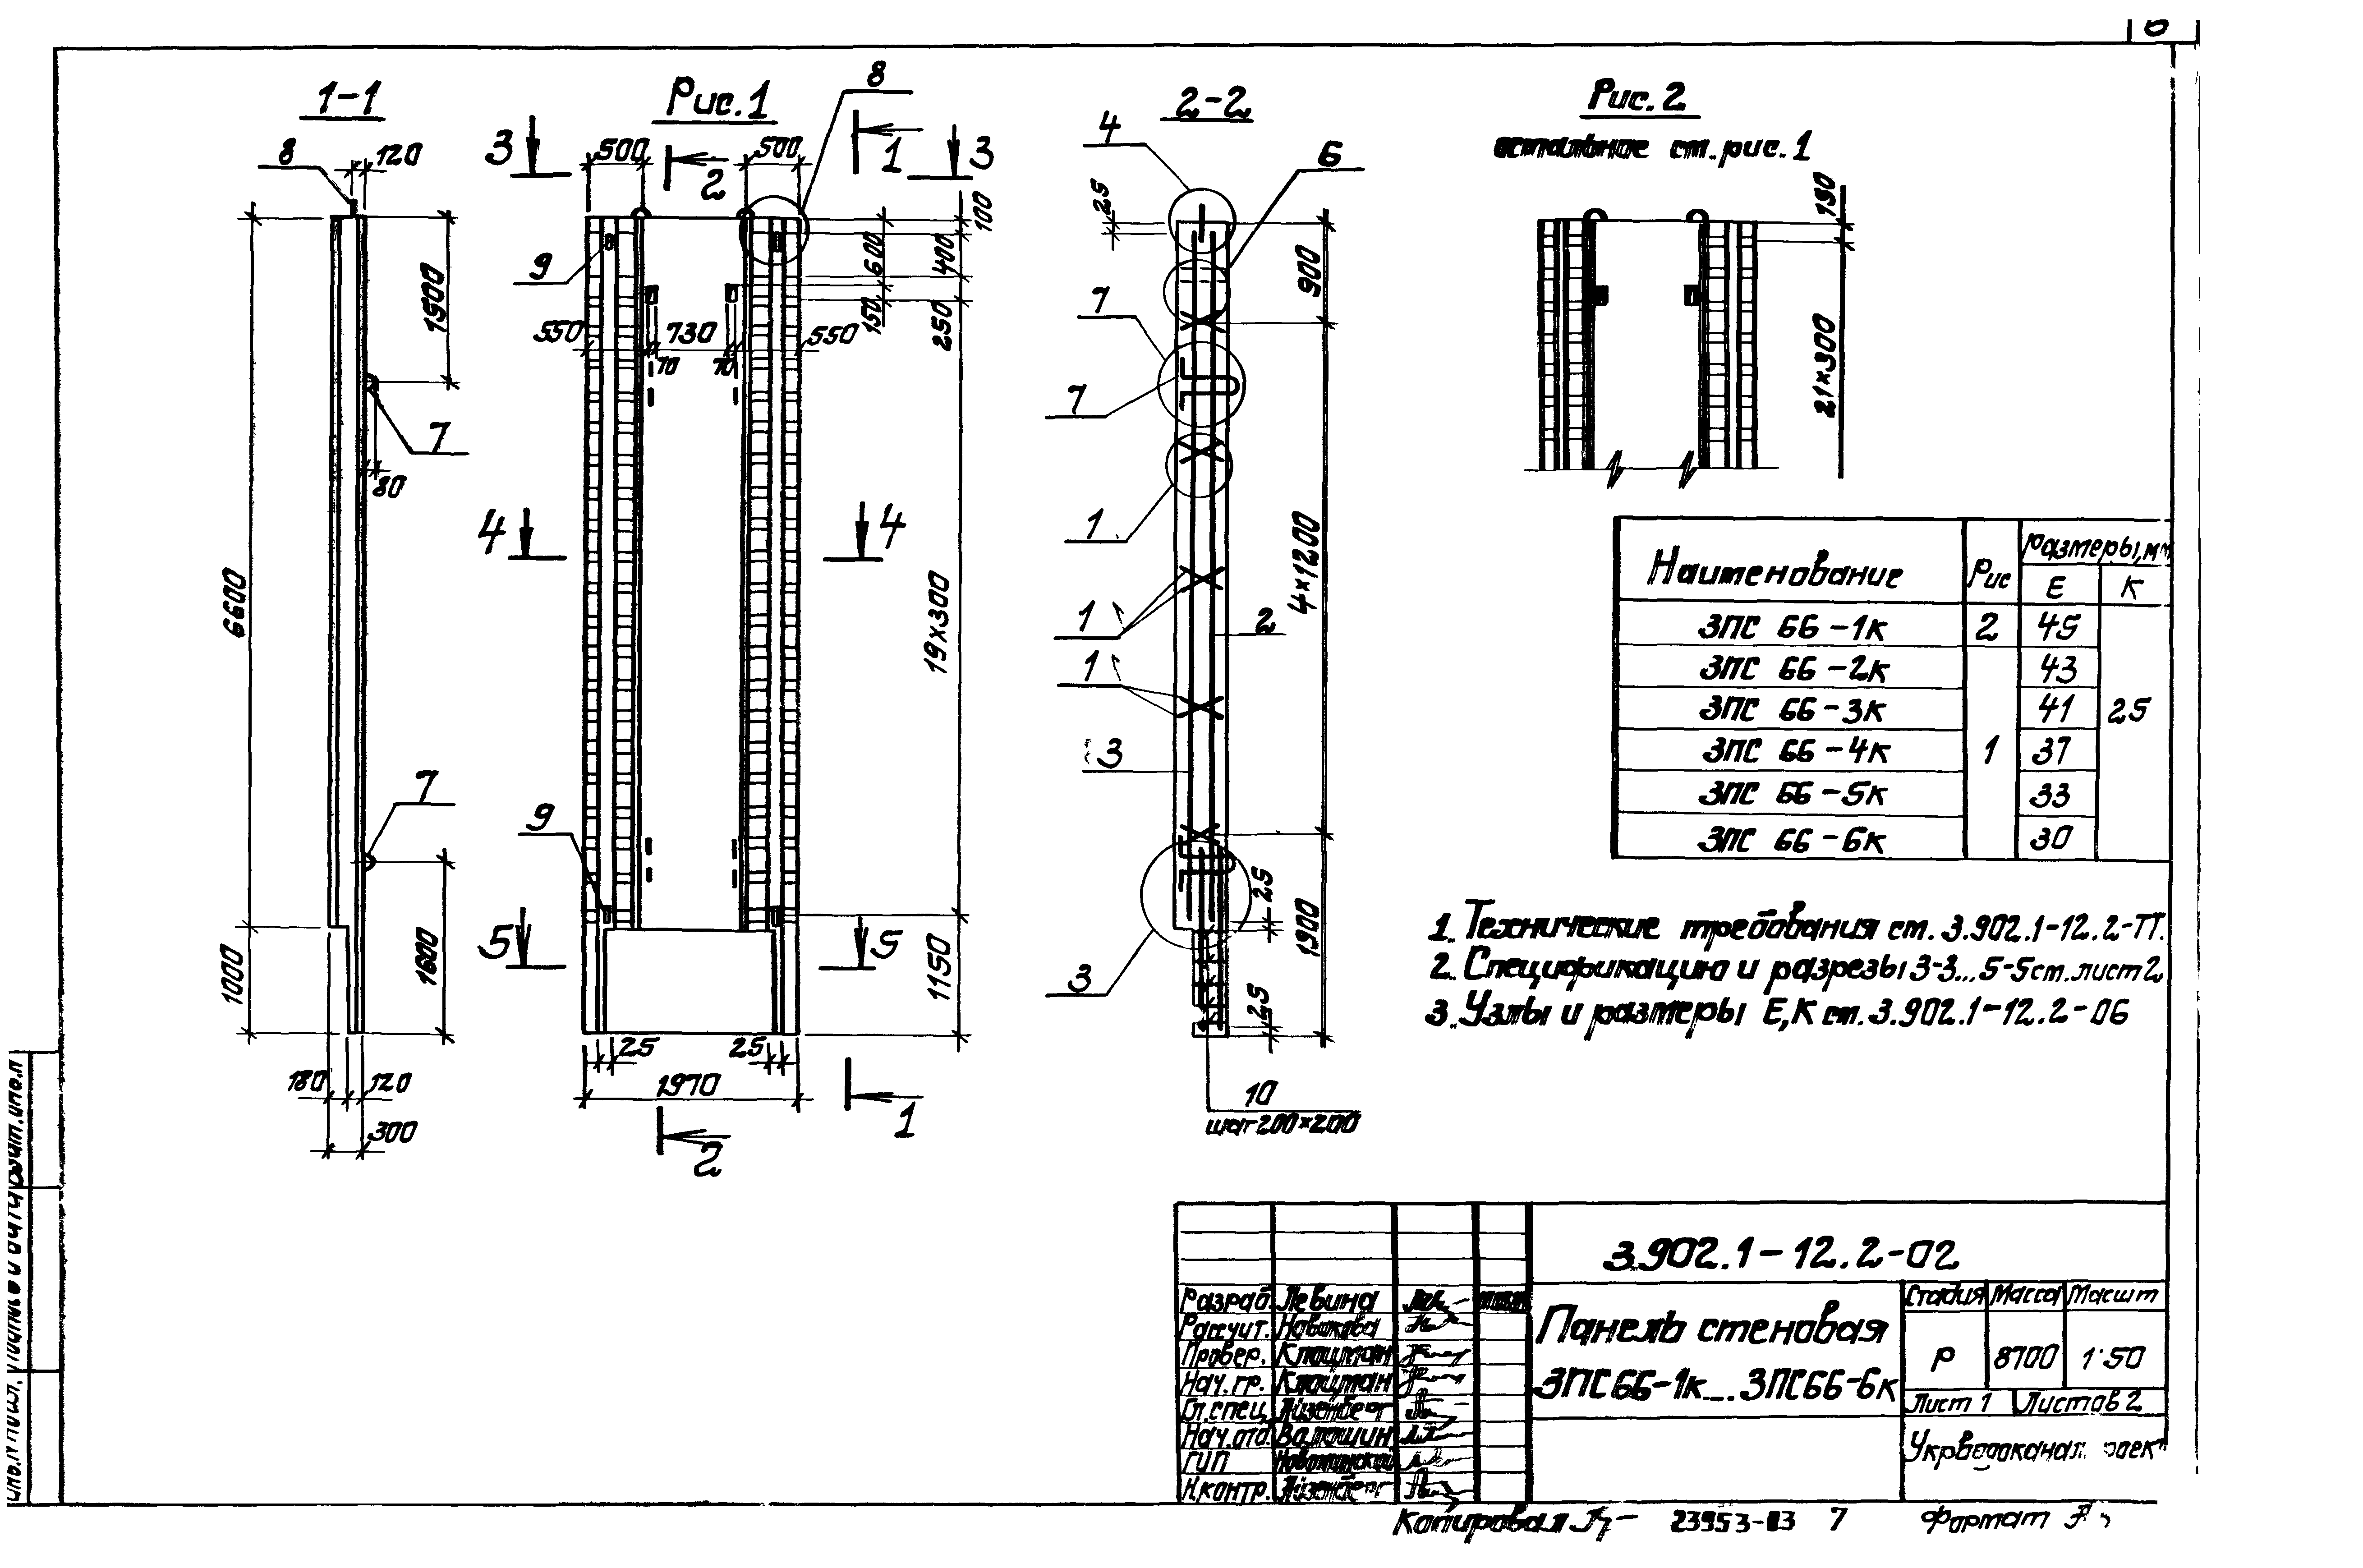 Панель стеновая 3ПС66-1к Серия 3.902.1-12, вып.2